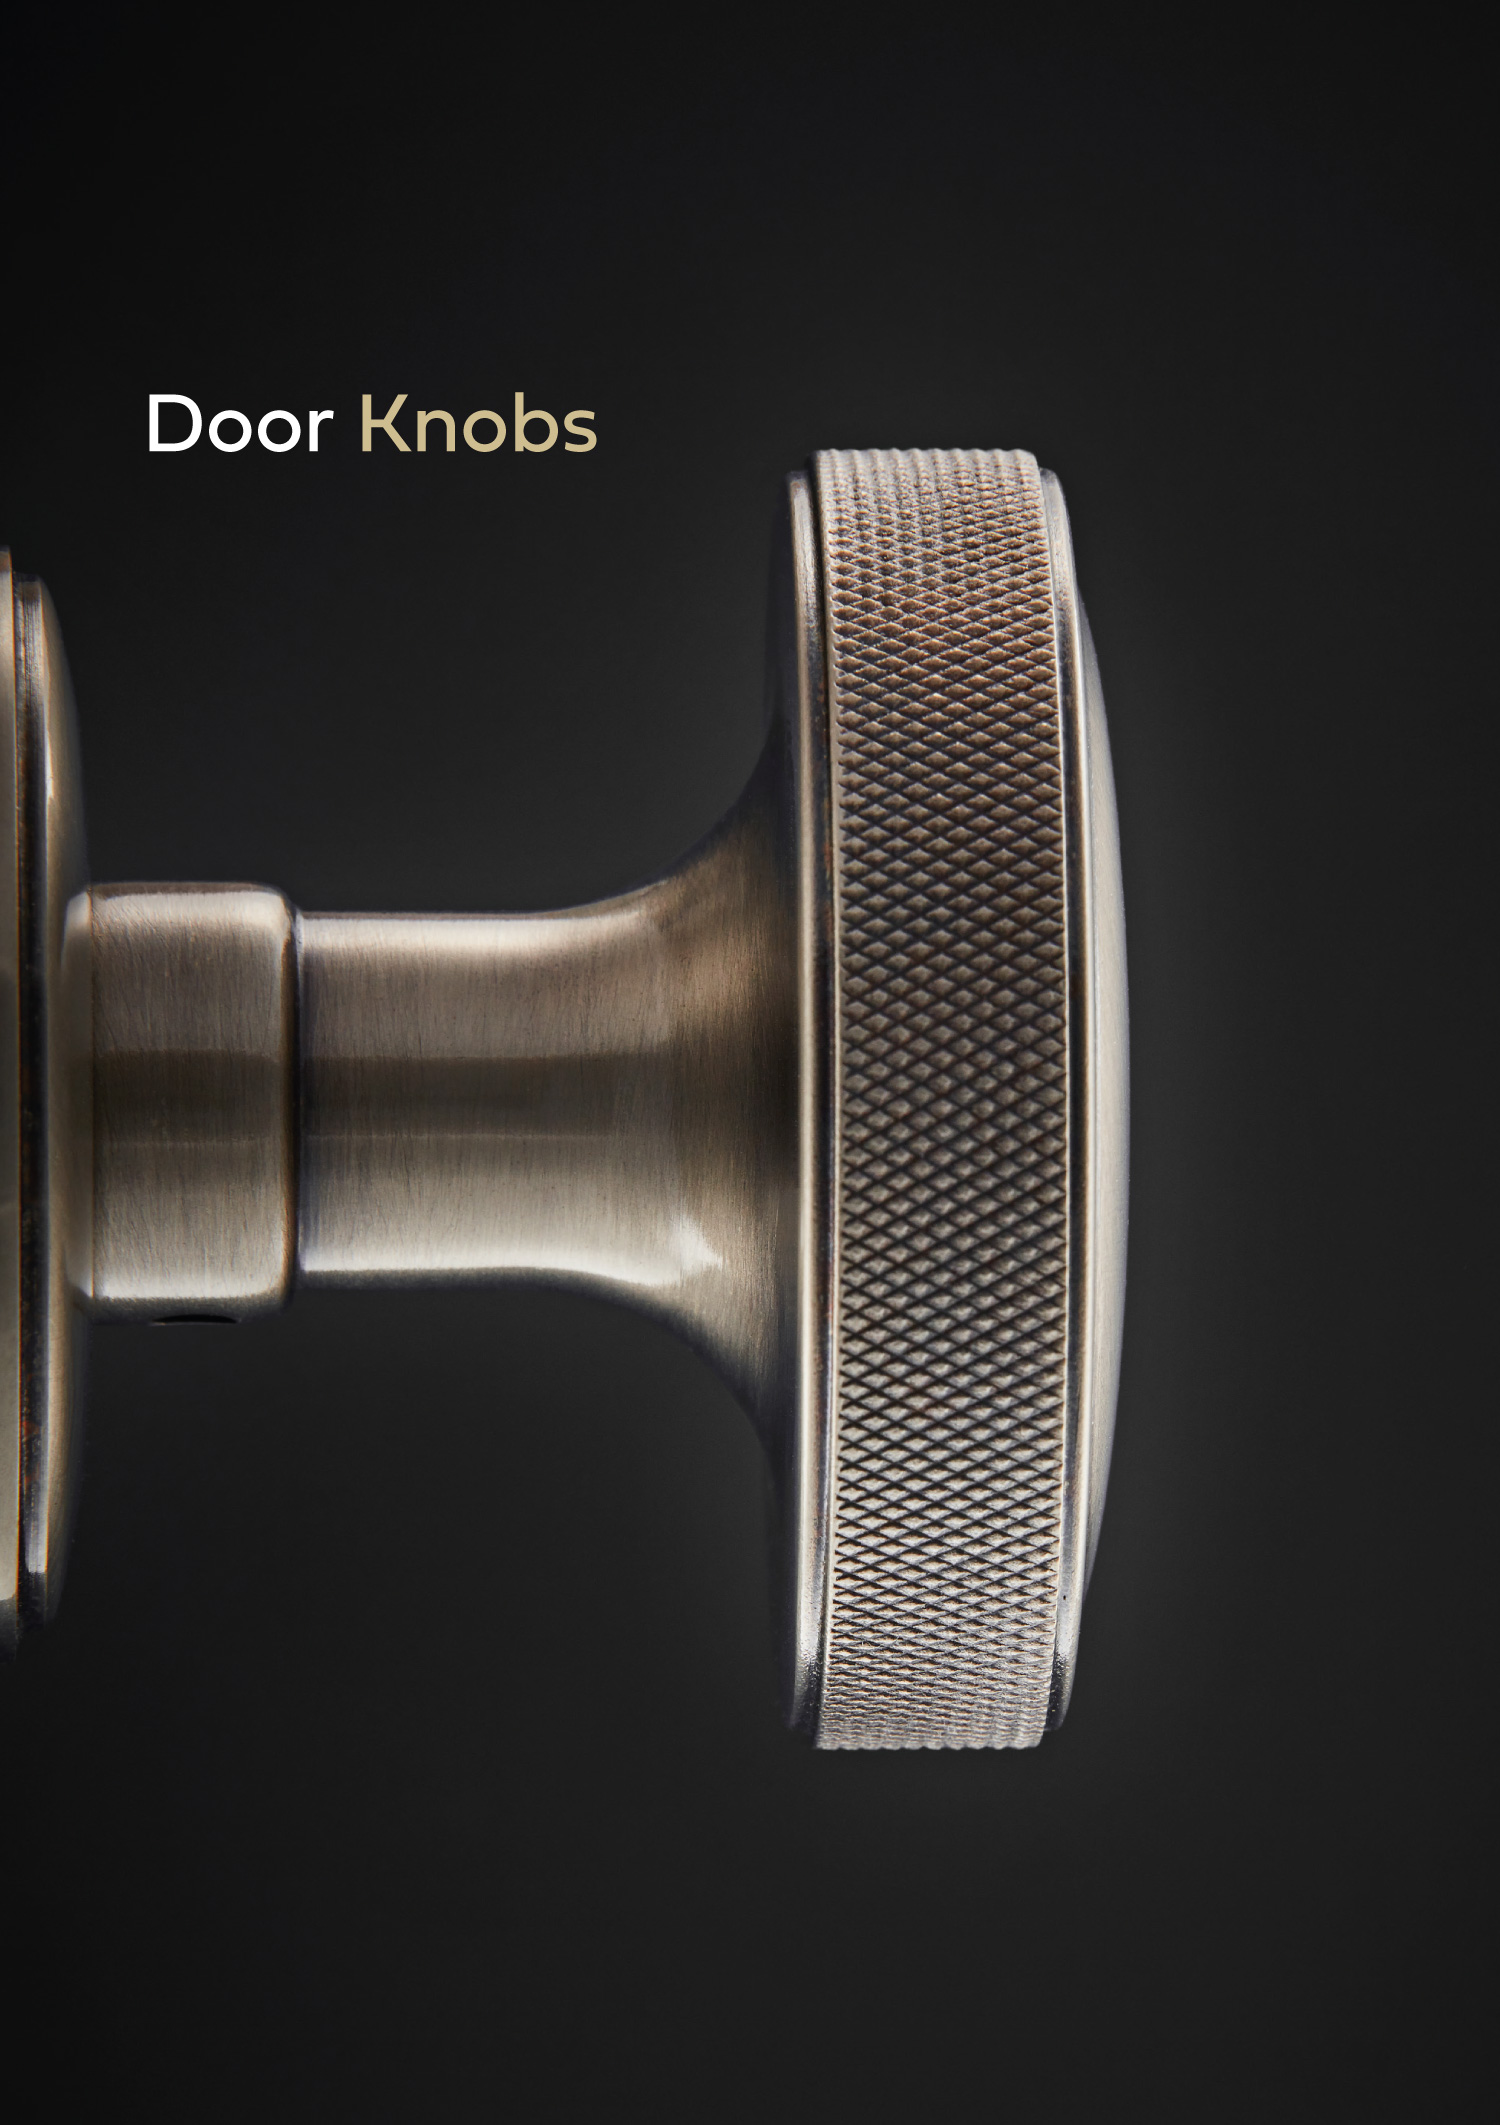 Door knobs brochure by Croft